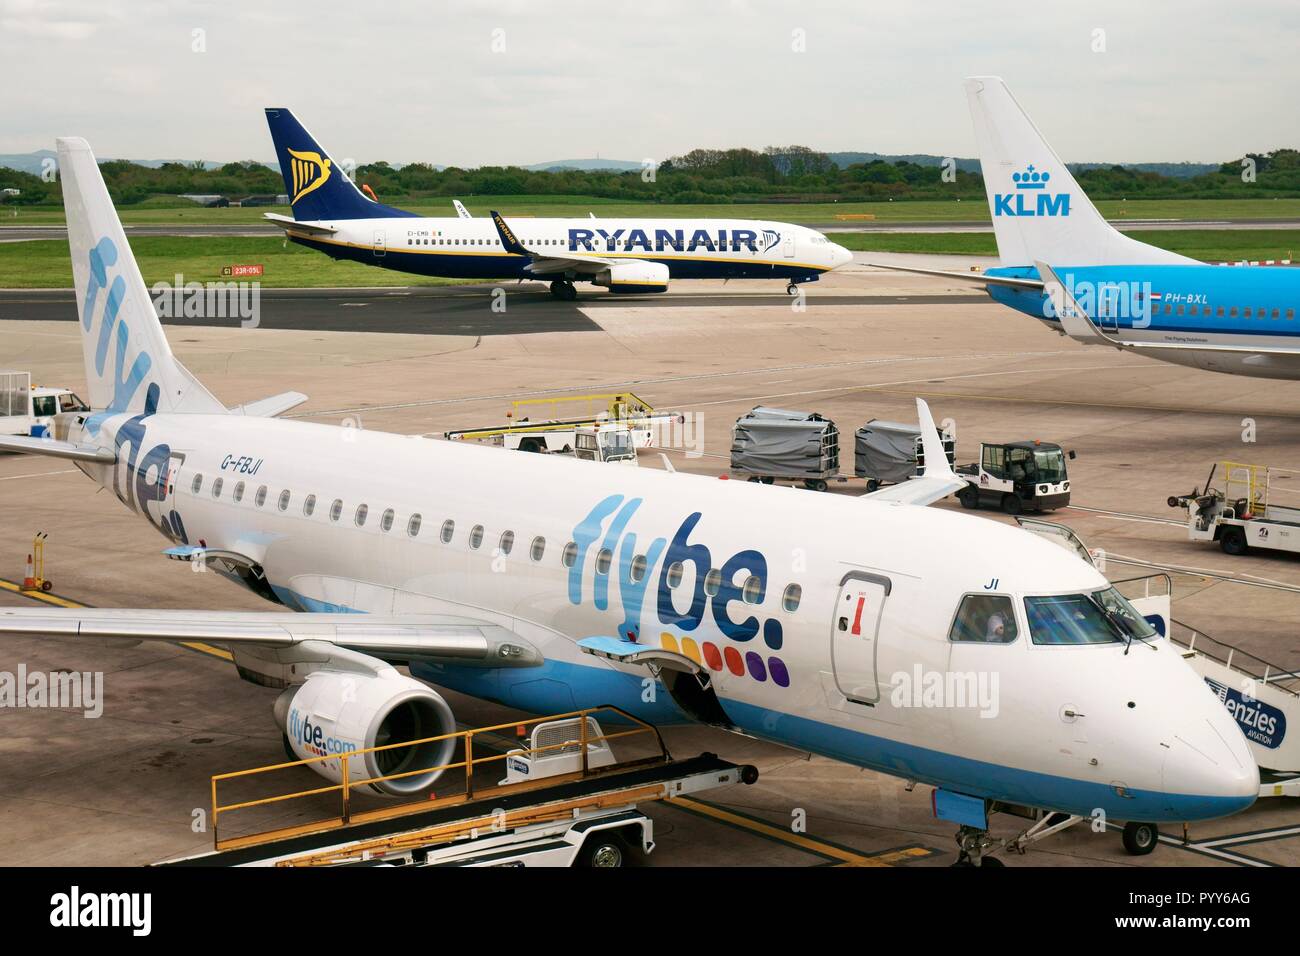 Flybe, Ryanair und KLM Passagierflugzeug jet Aircraft Flugzeug auf der Landebahn Schürze aus flugsteige von Manchester Airport Terminal Building, England gesehen Stockfoto